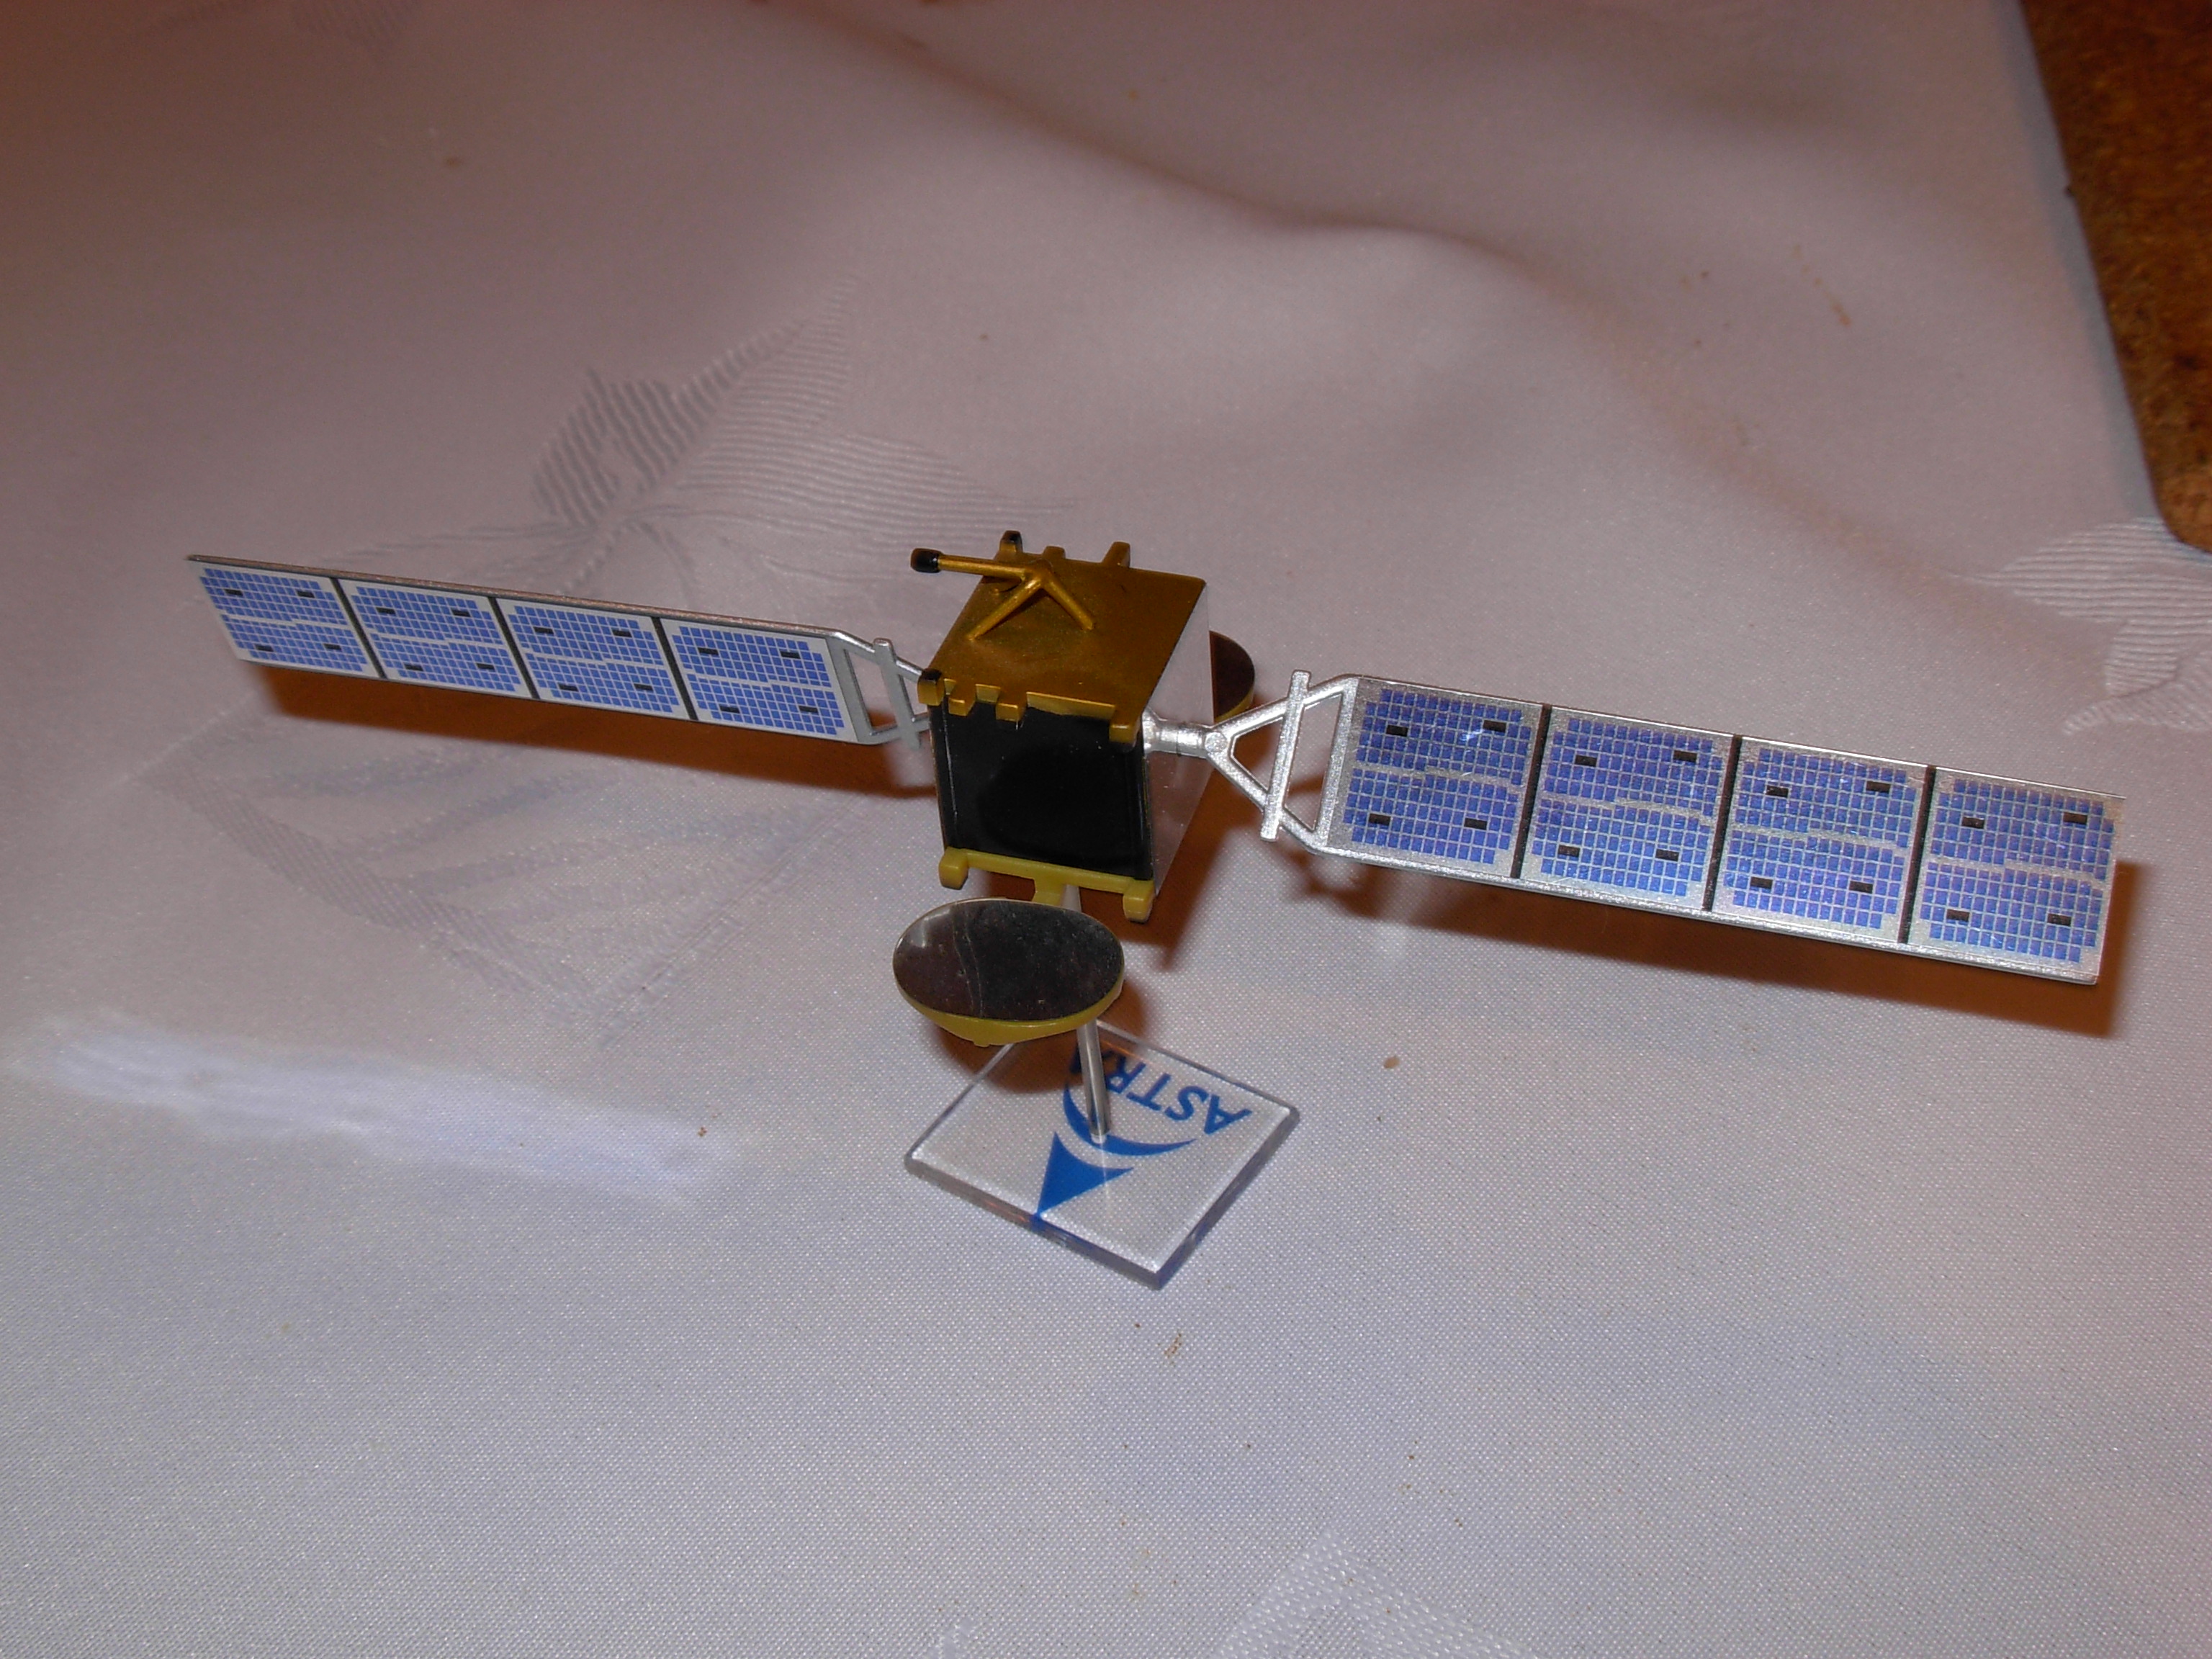 SES Astra satellite